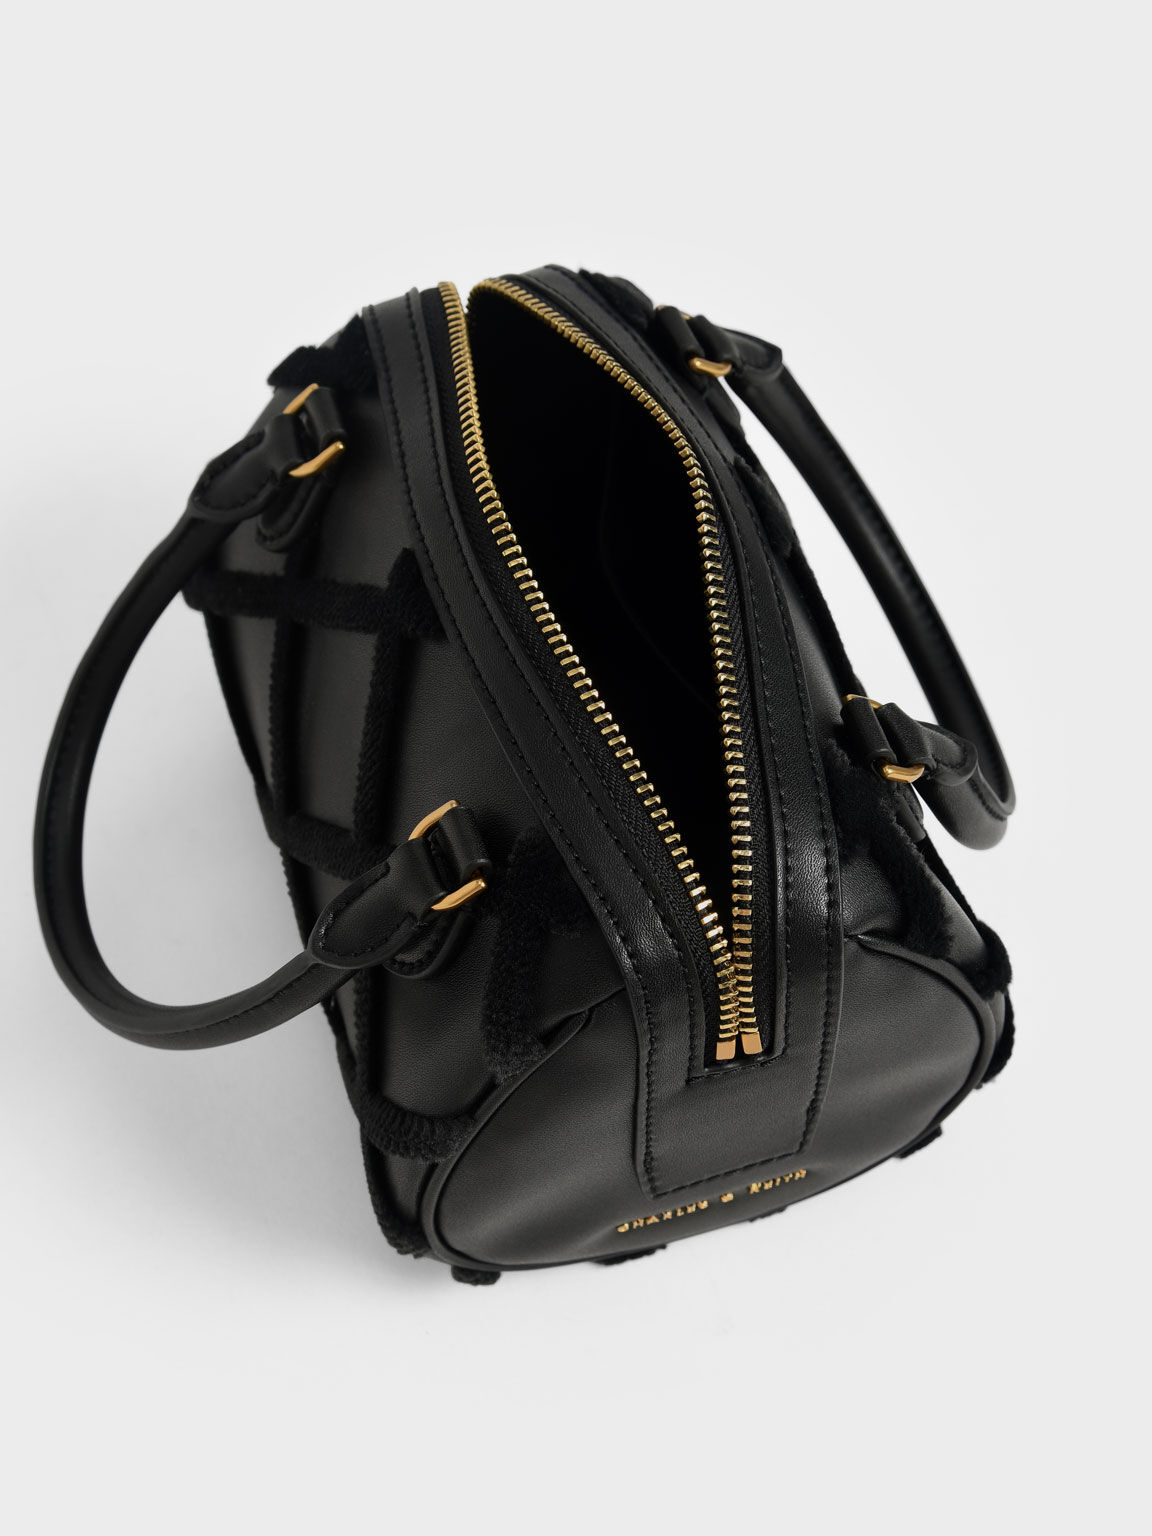 Cleo Criss-Cross Pattern Top Handle Bag, Black, hi-res